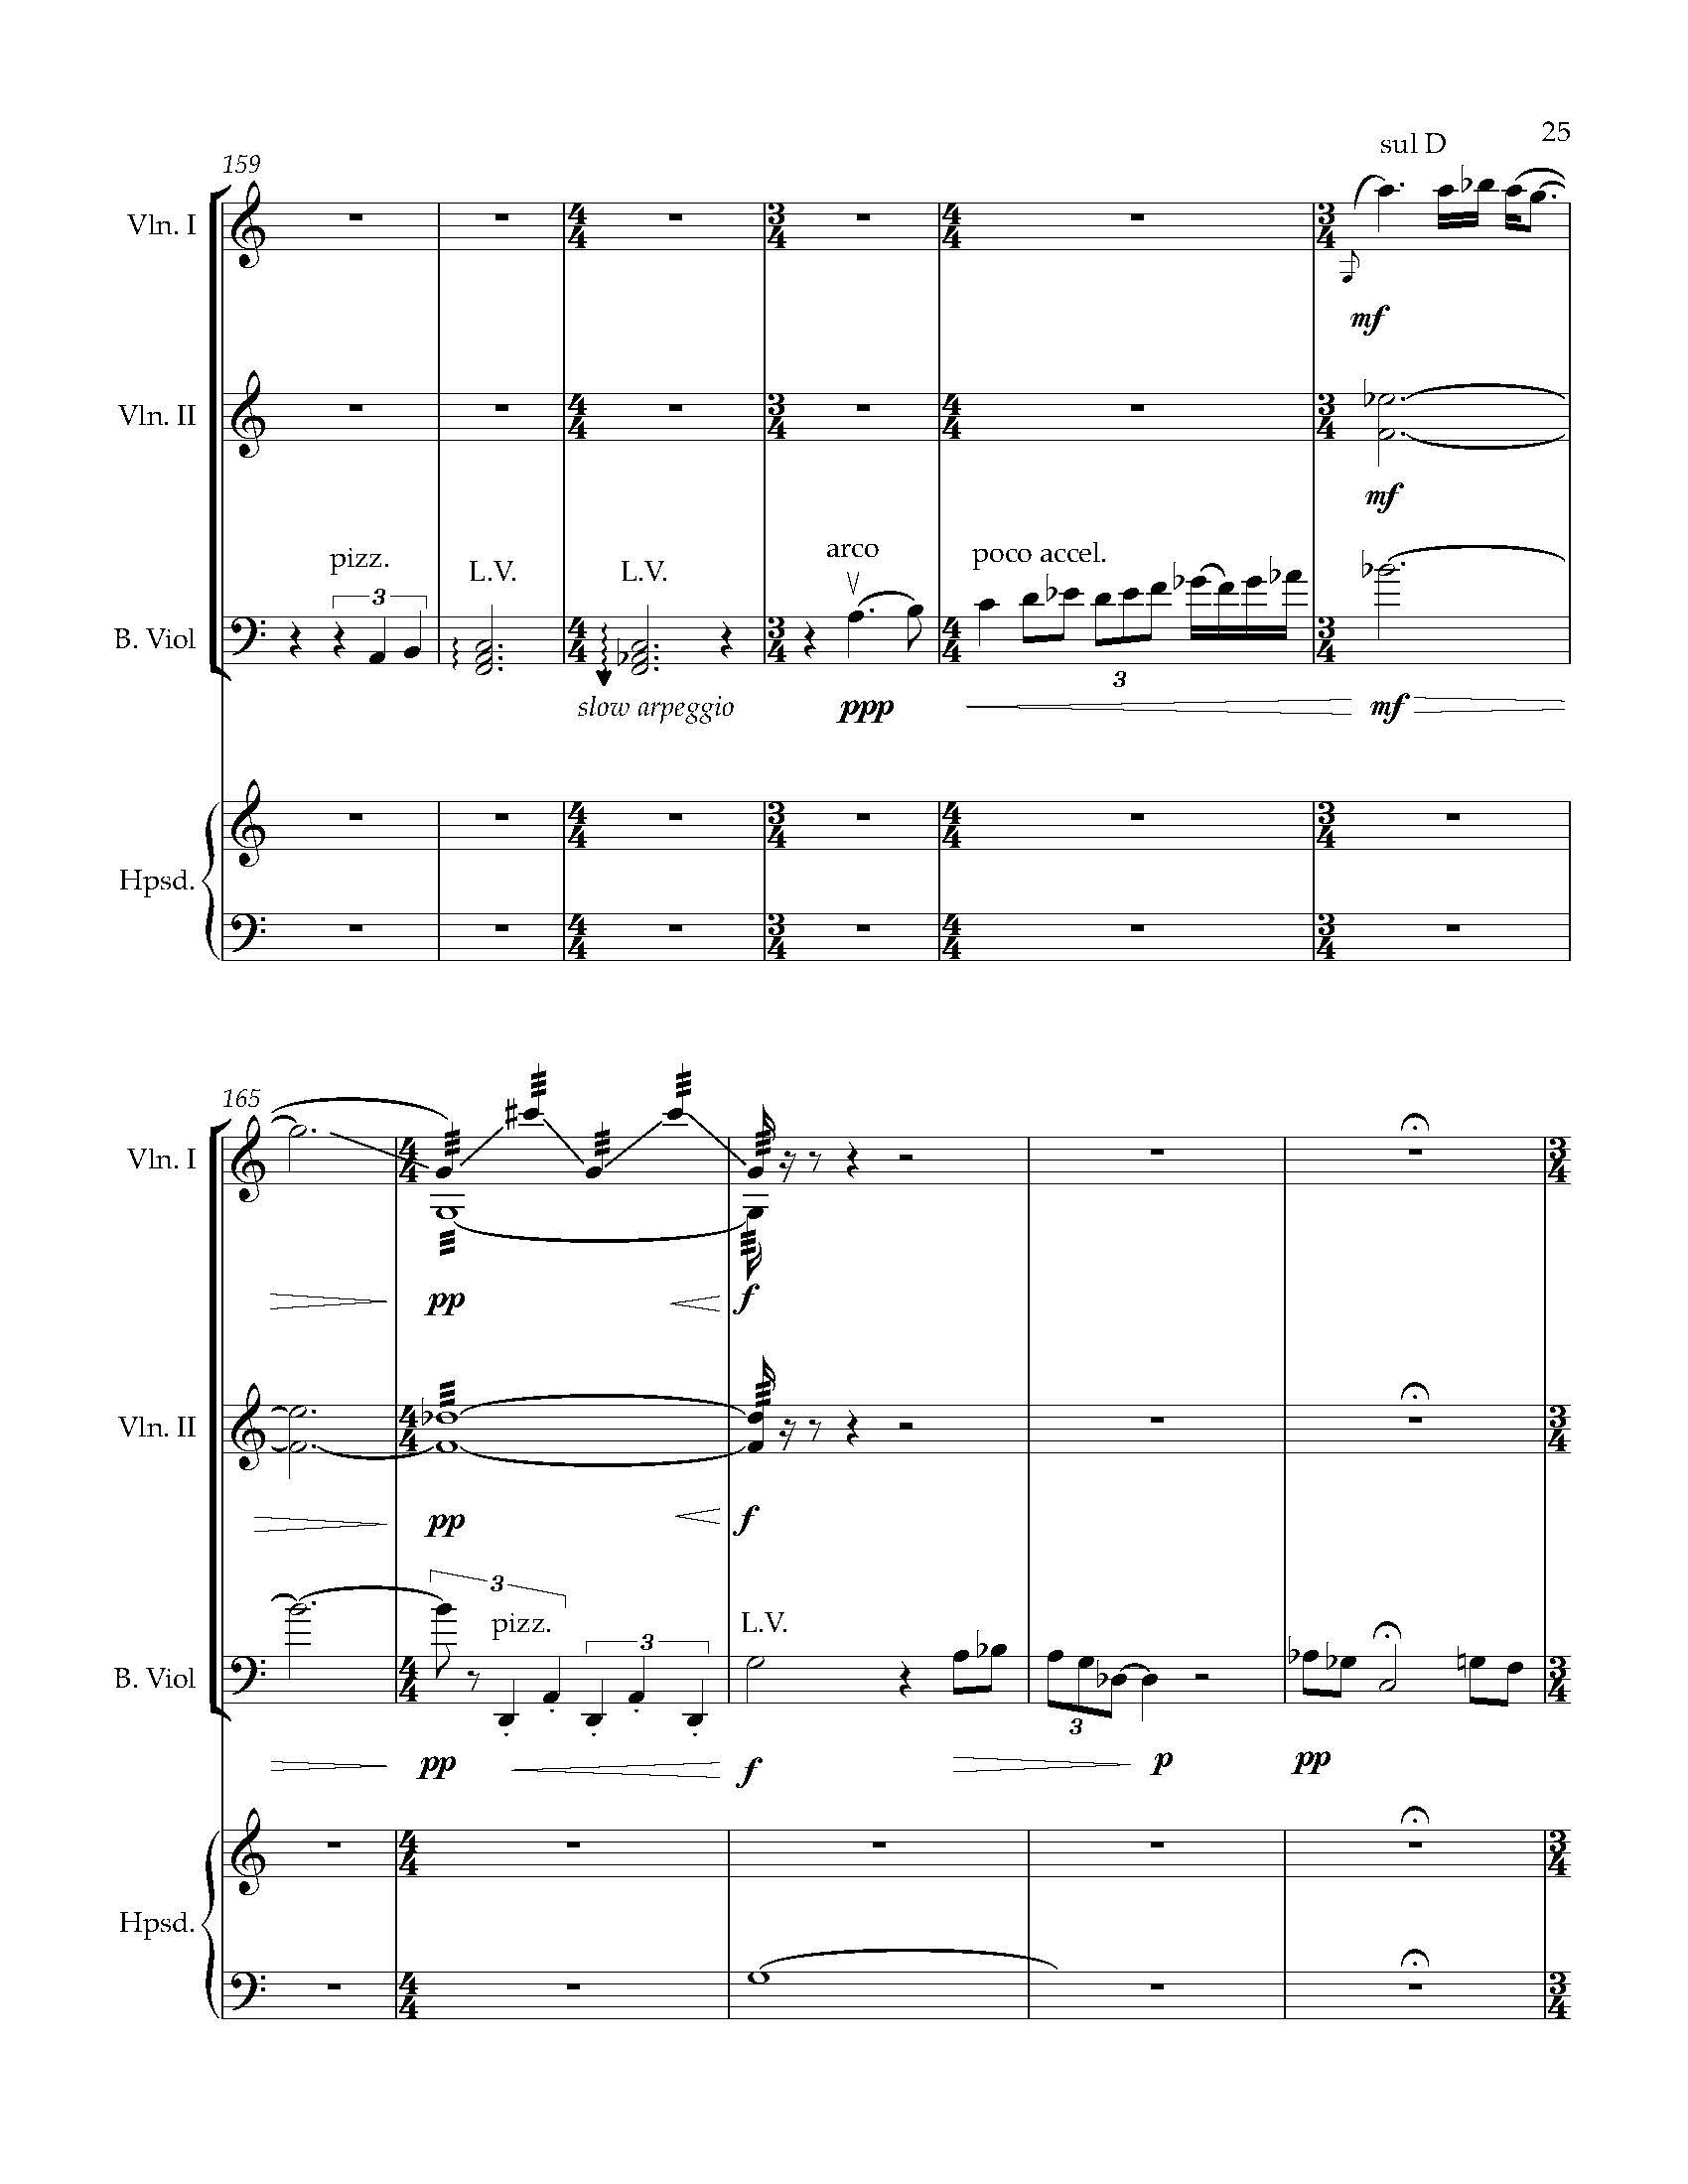 Sonata Sonare - Complete Score_Page_31.jpg